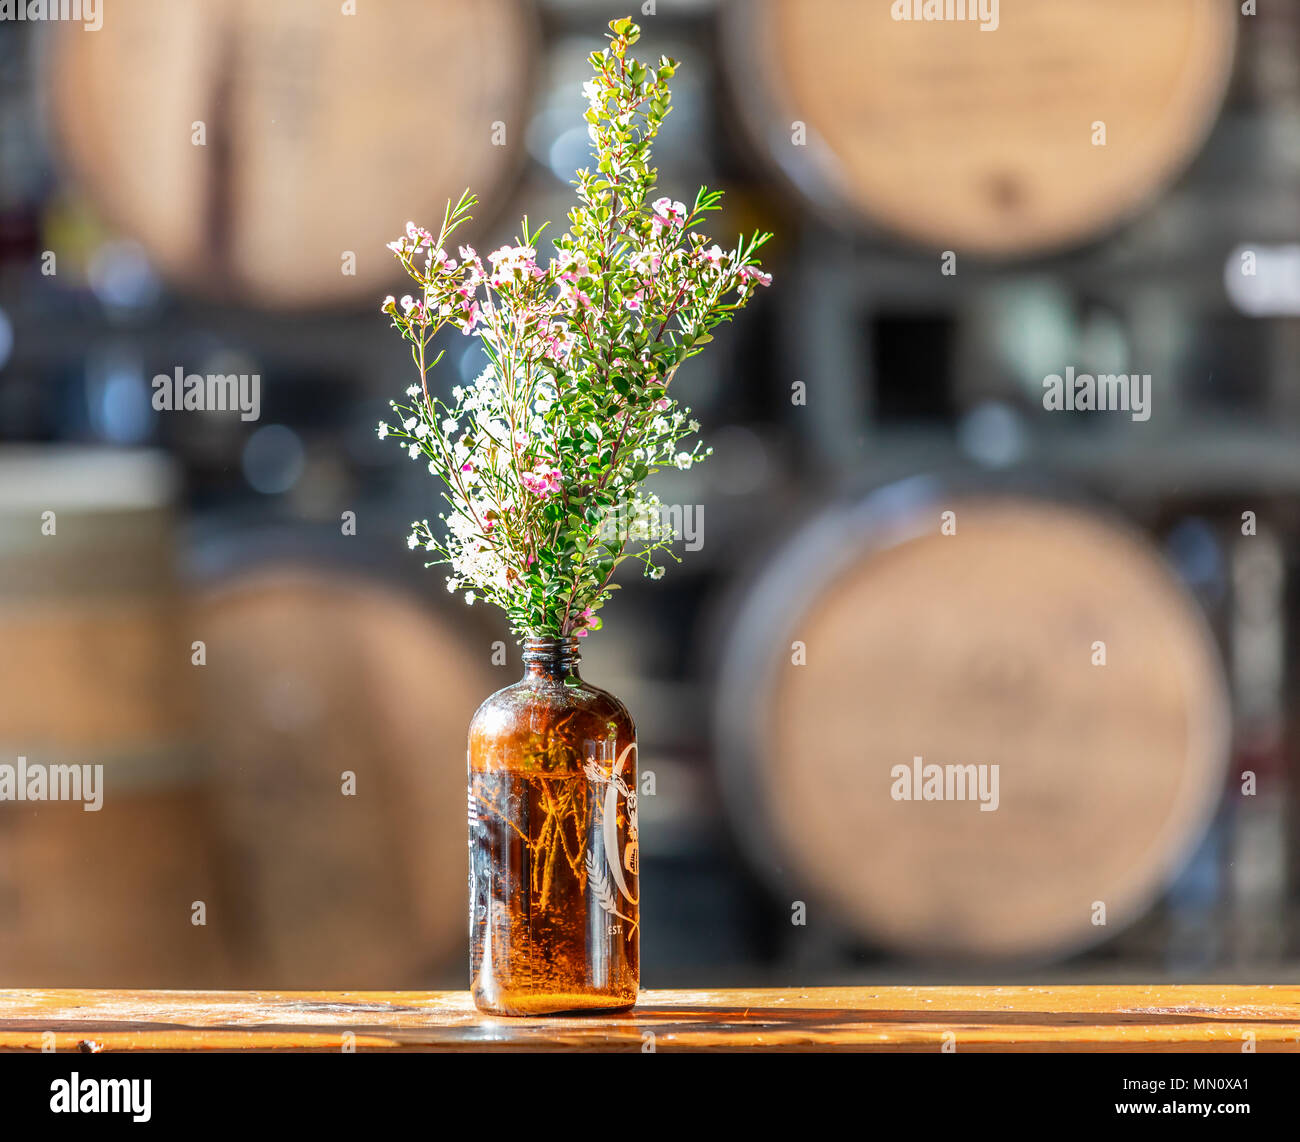 Fresh cut fiori selvatici in una bottiglia scura con botti di grandi dimensioni in background Foto Stock